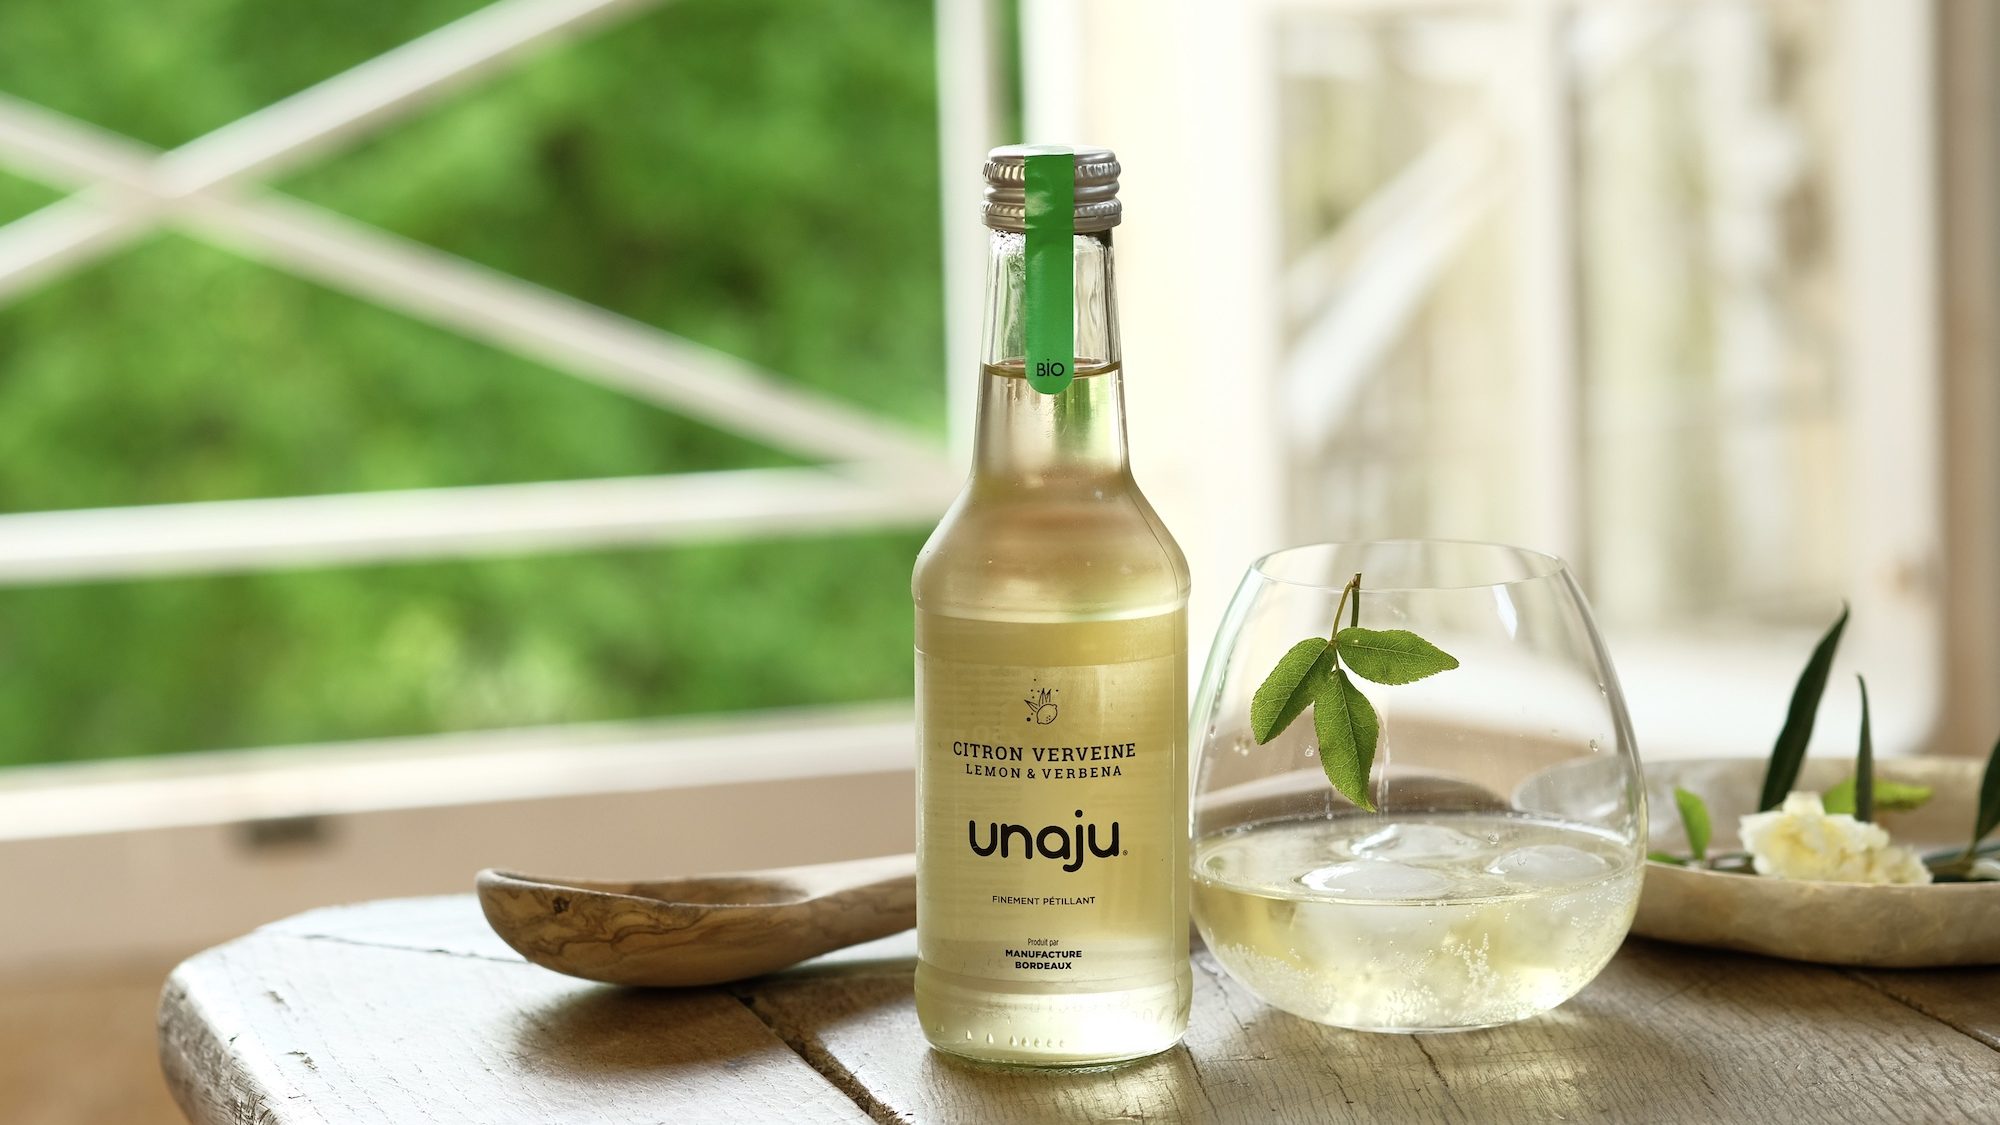 Douze parfums sont disponibles dans la gamme de boisson Unaju.